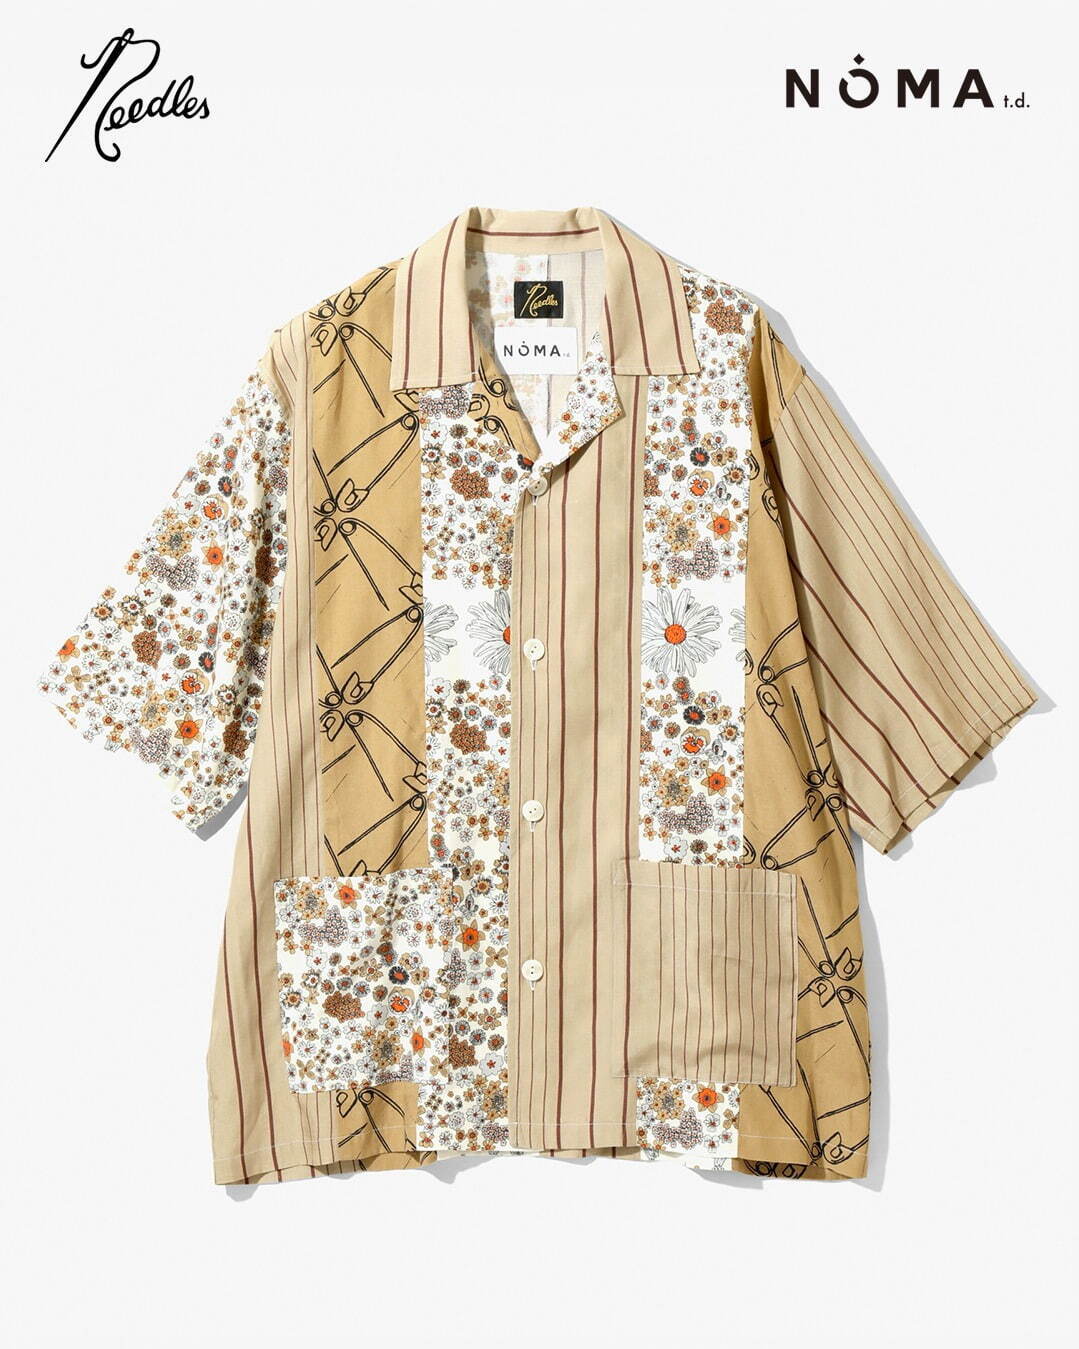 Cabana Shirt - Patchwork 34,100円